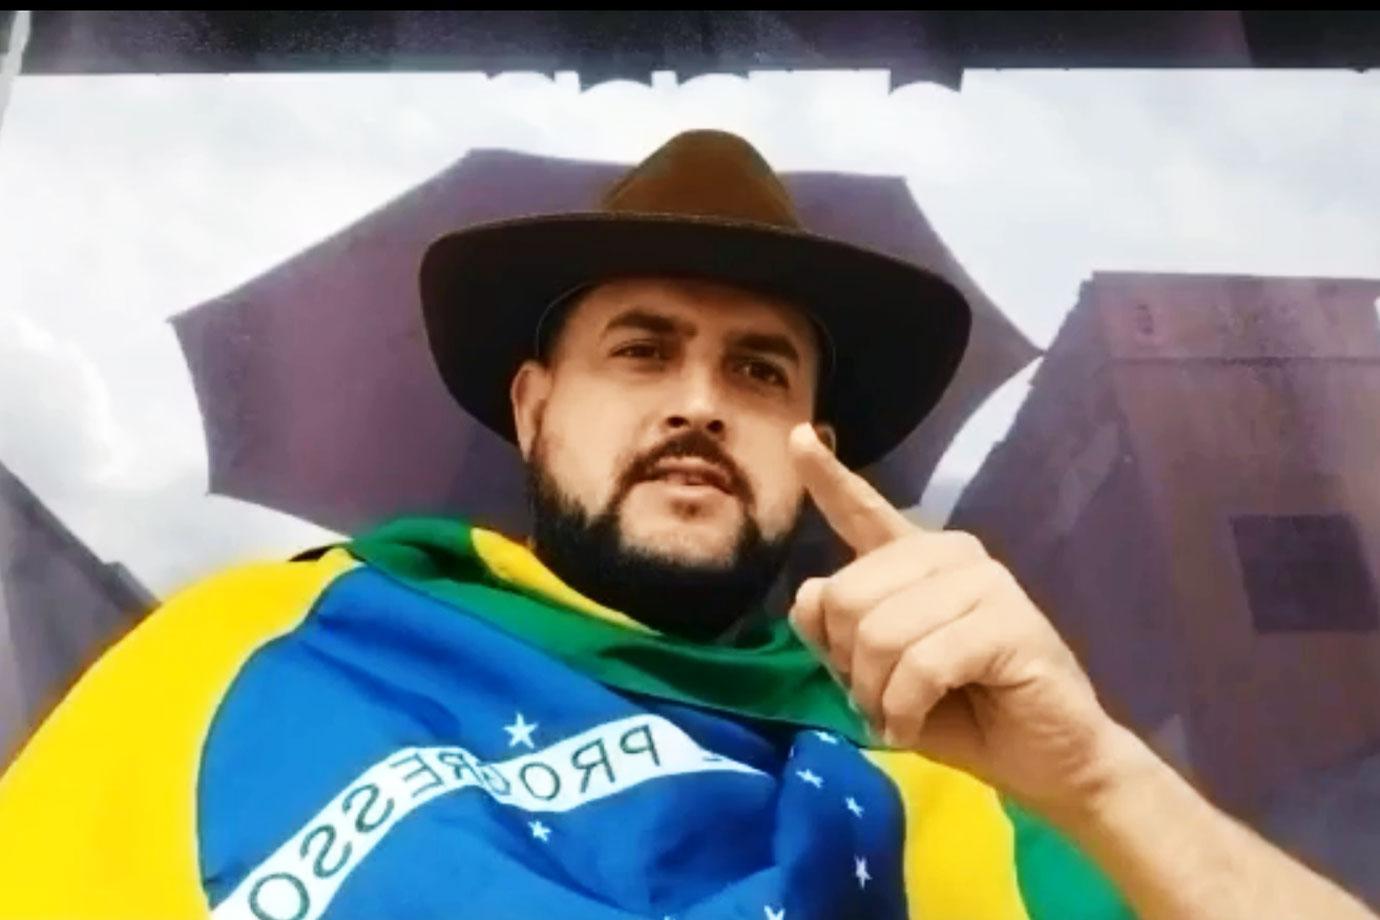 Zé Trovão, un chofer de bolsillo, es detenido por la policía federal en Santa Catarina